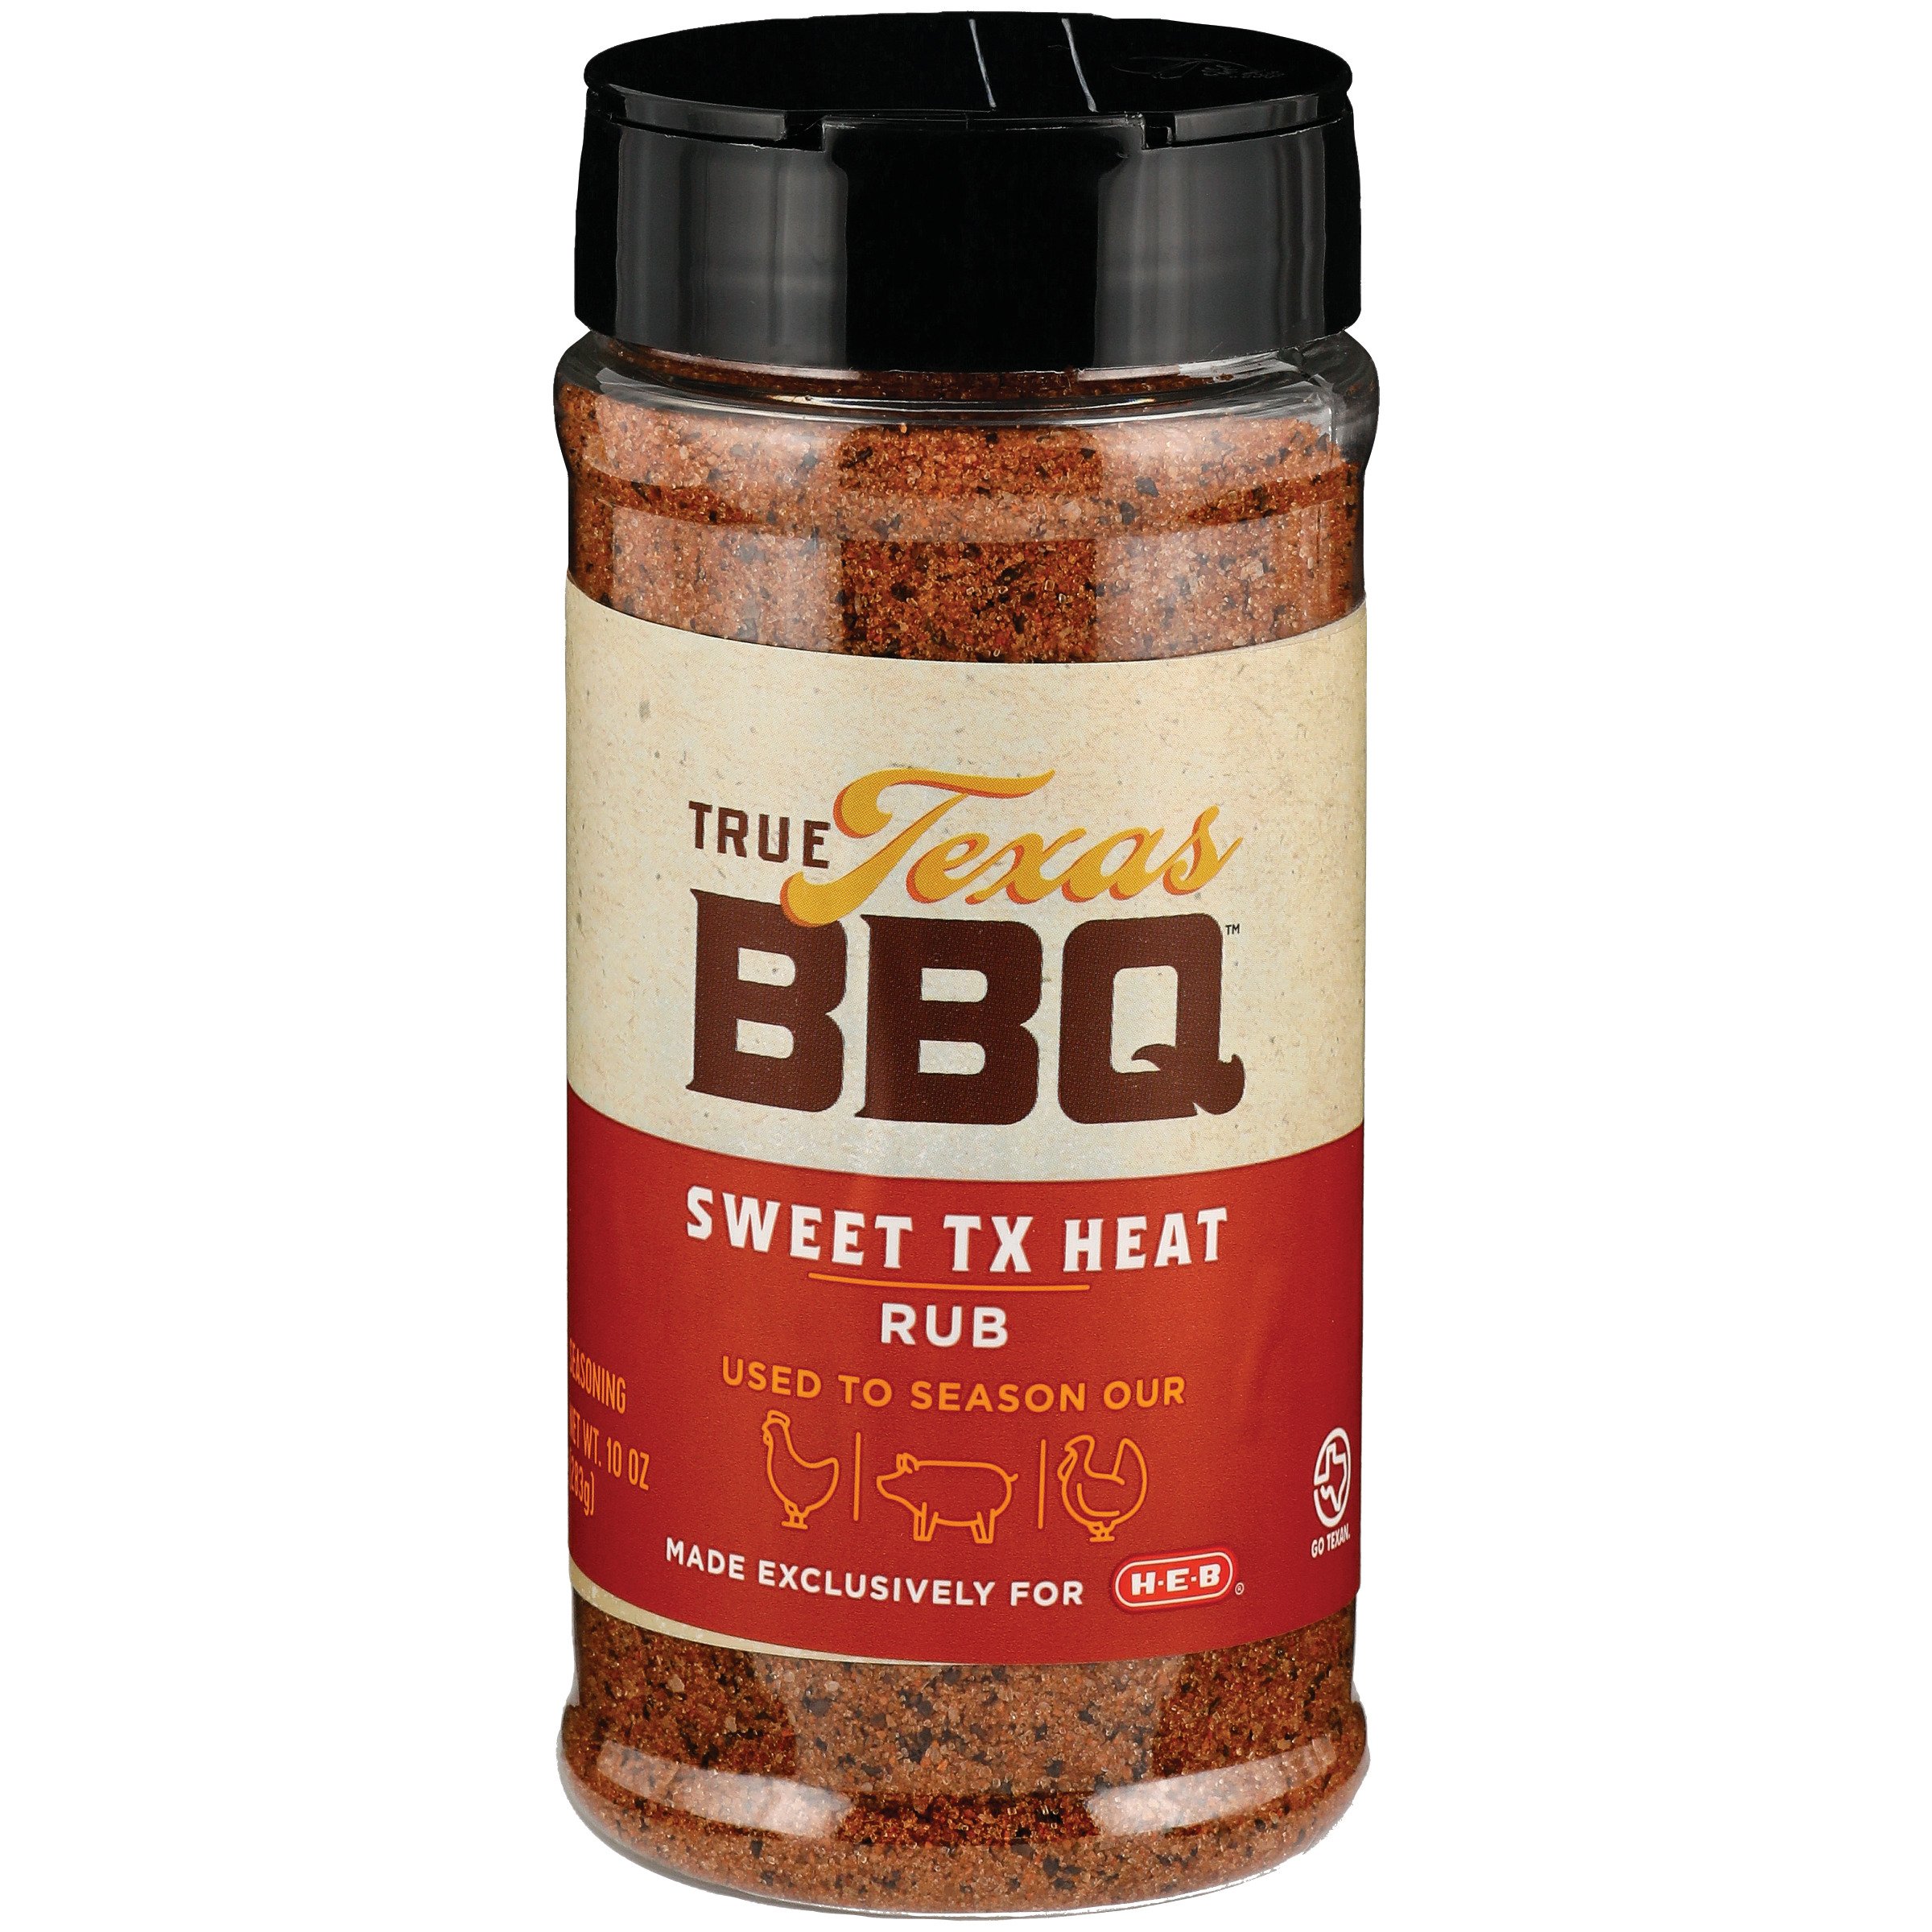 True Texas Sweet TX Heat Rub - Shop Spices & H-E-B